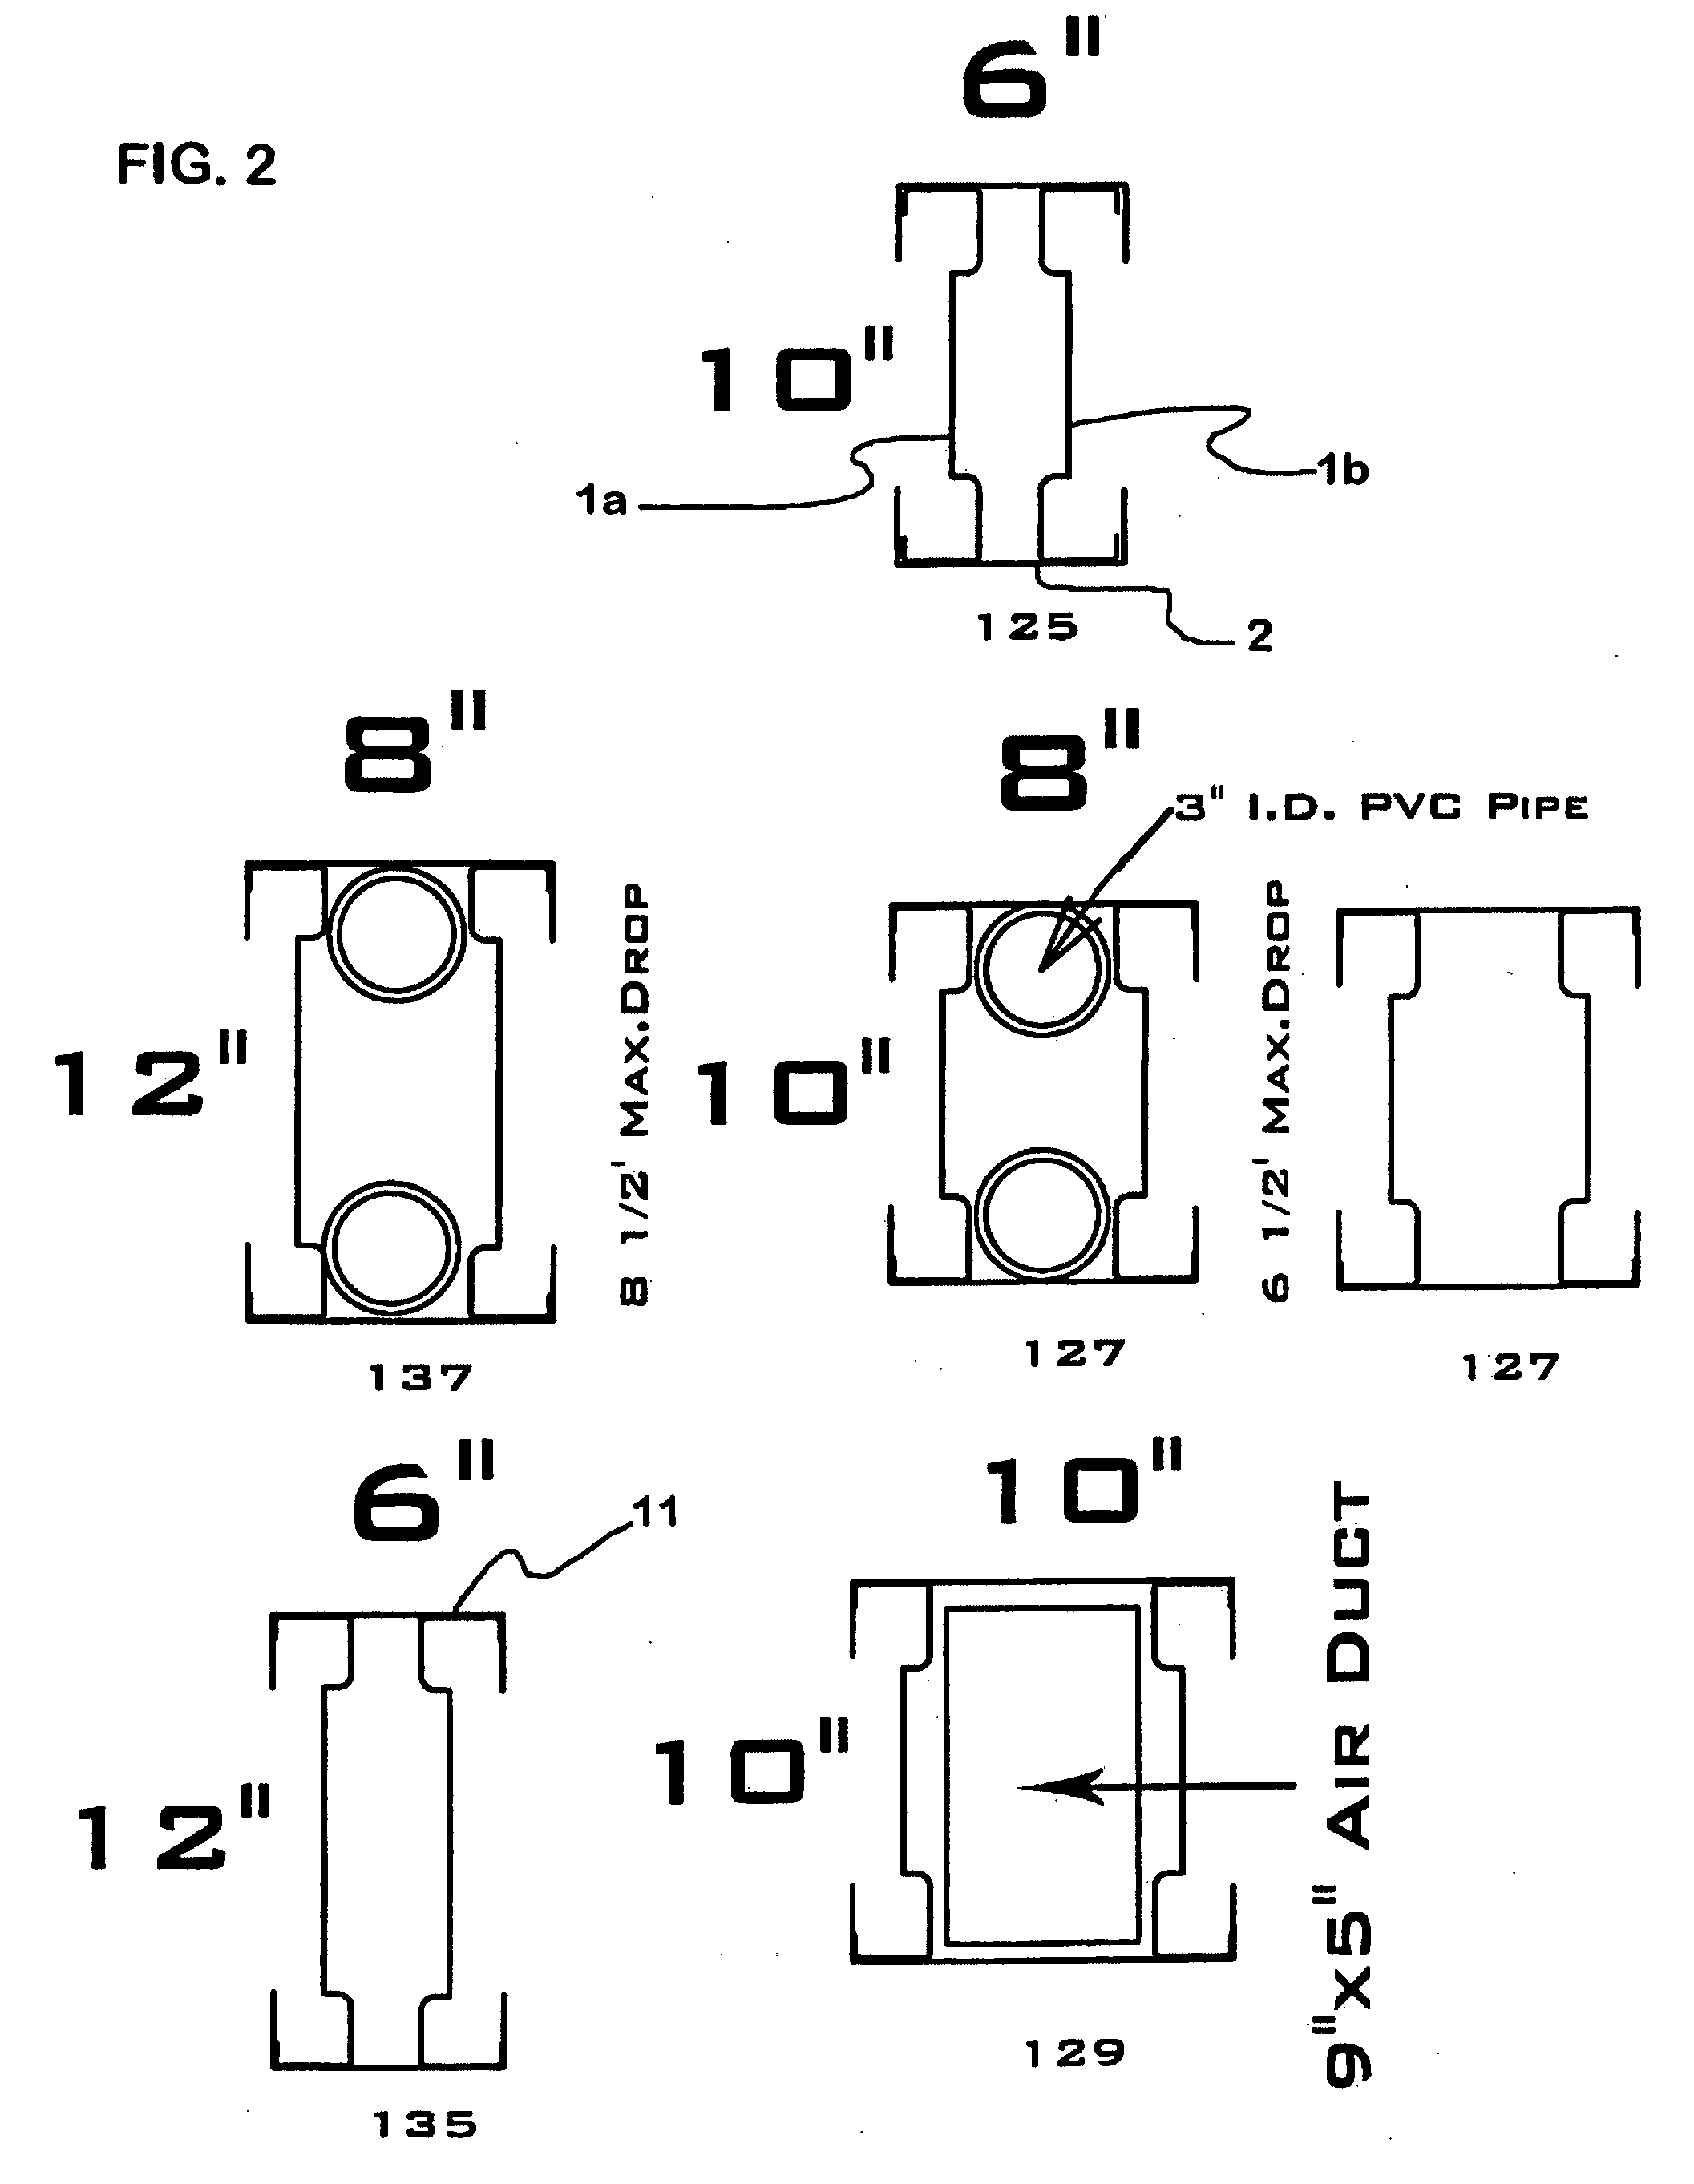 Method of manufacturing housing module gable